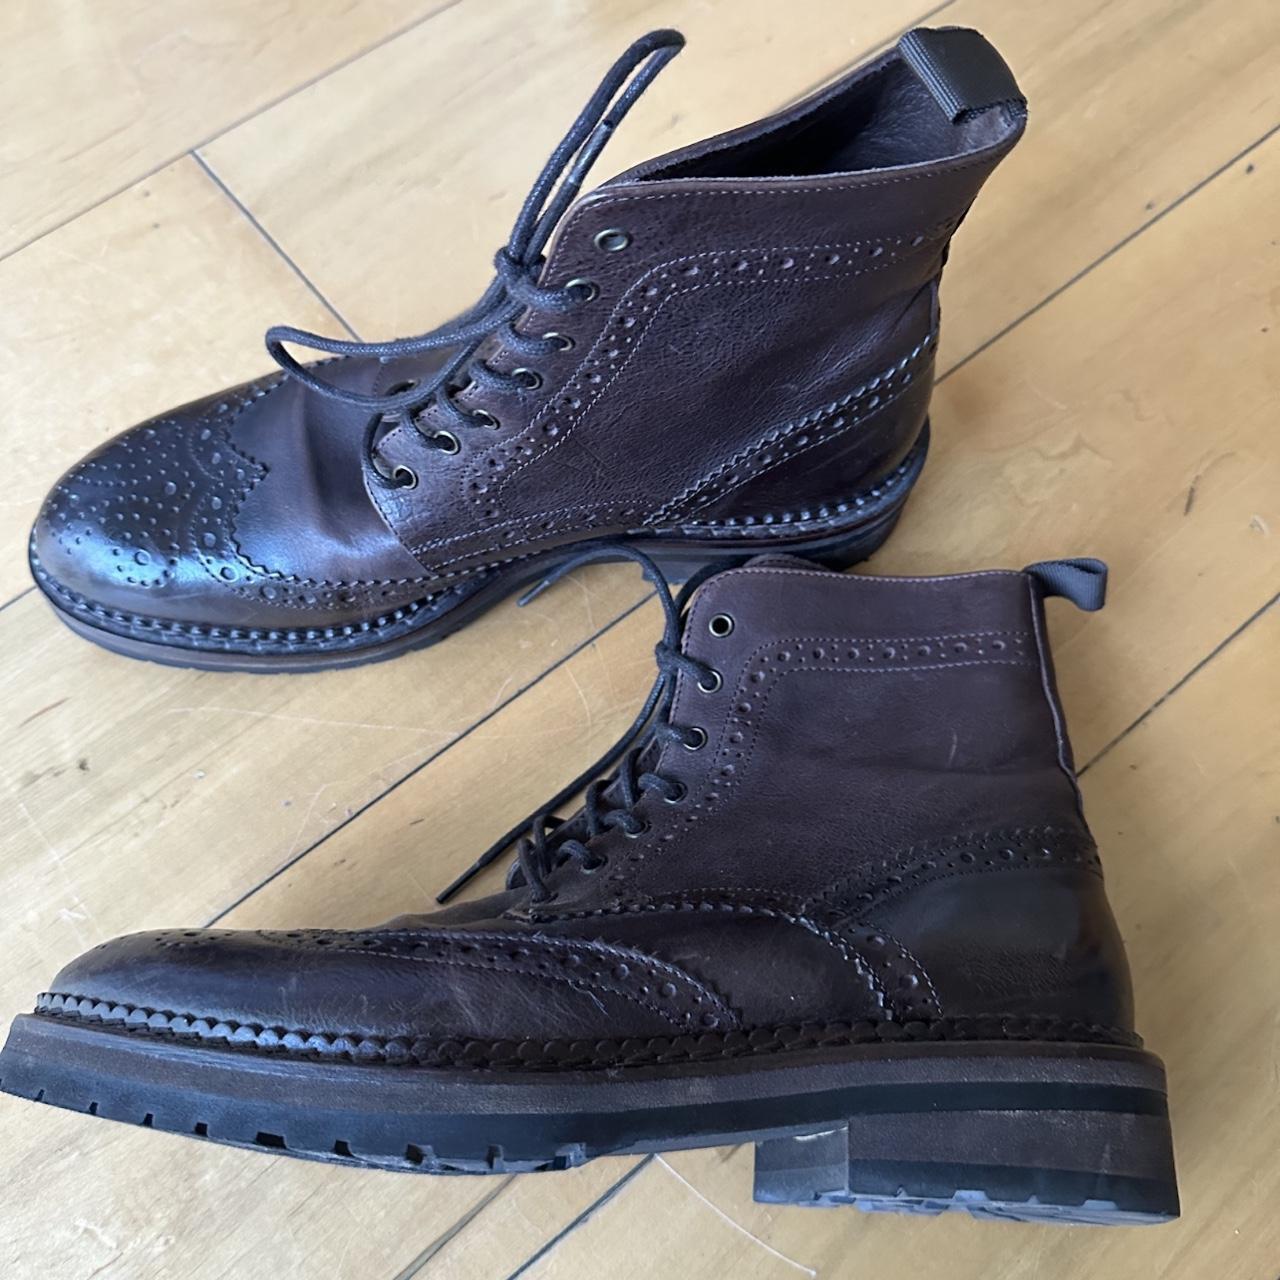 Guja milano boots from italy size: italian 39 - Depop